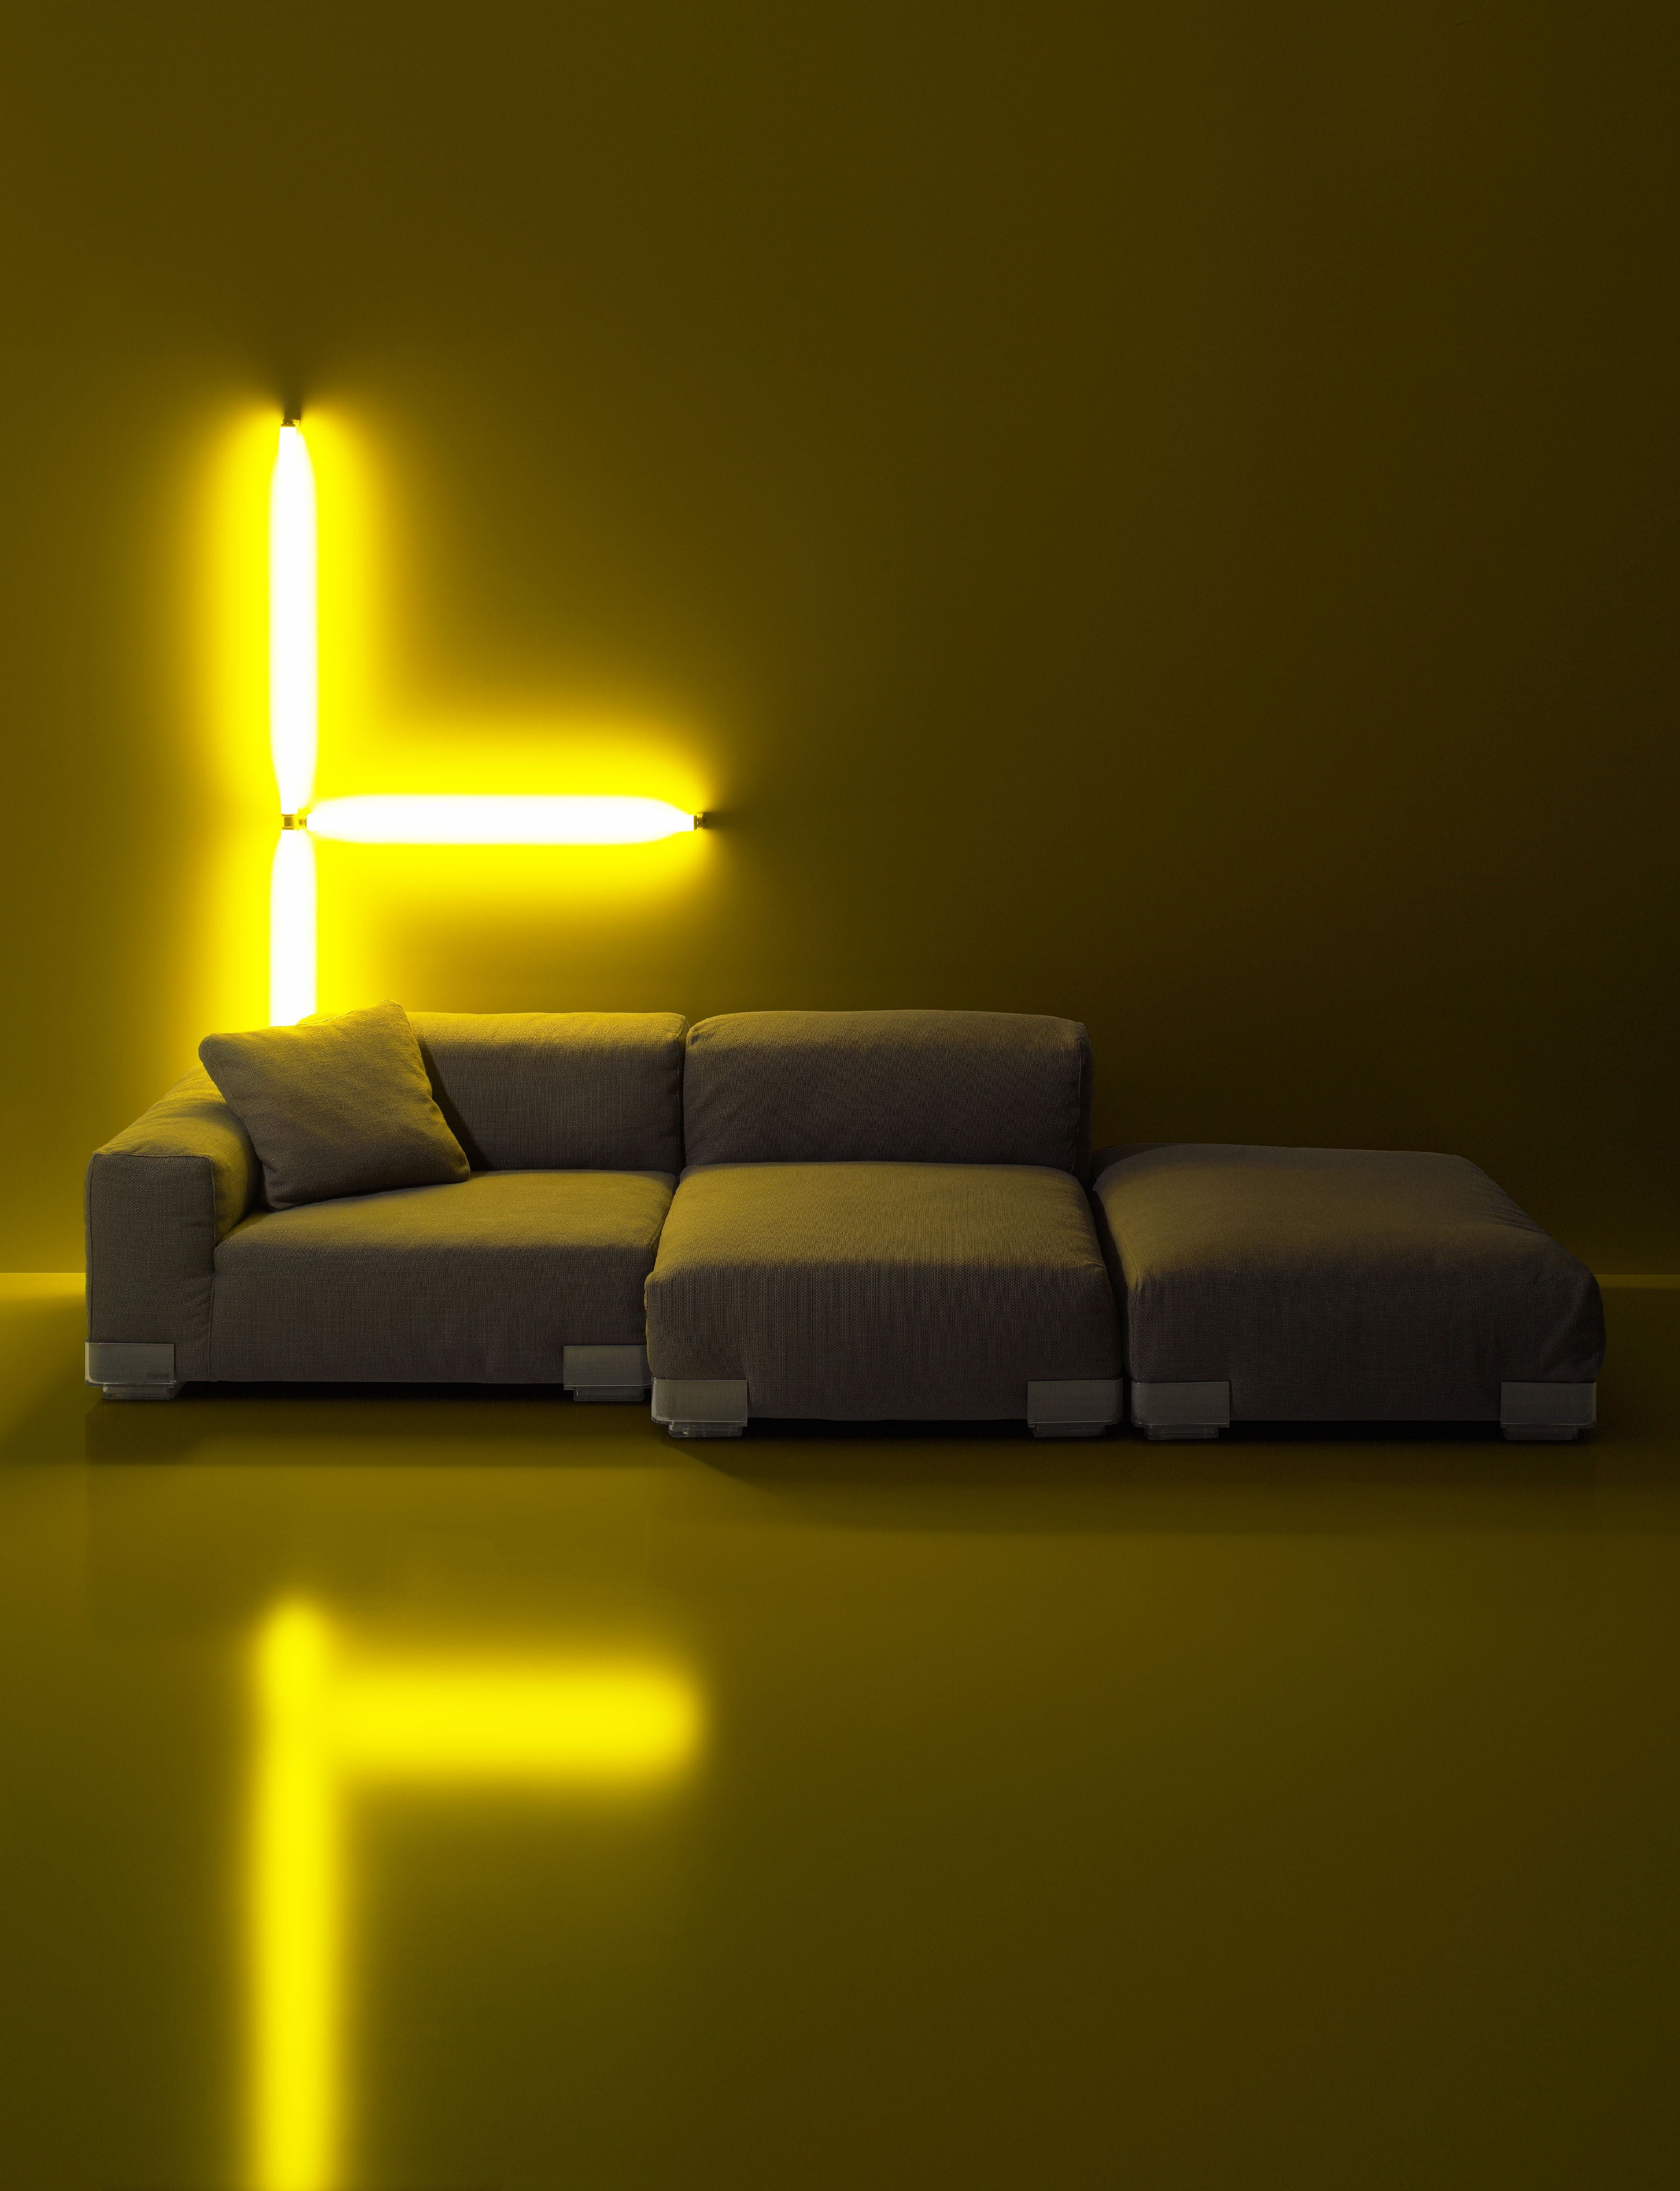 Kartell Plastics Duo 2 -personers sofa SX XL bomuld, grøn